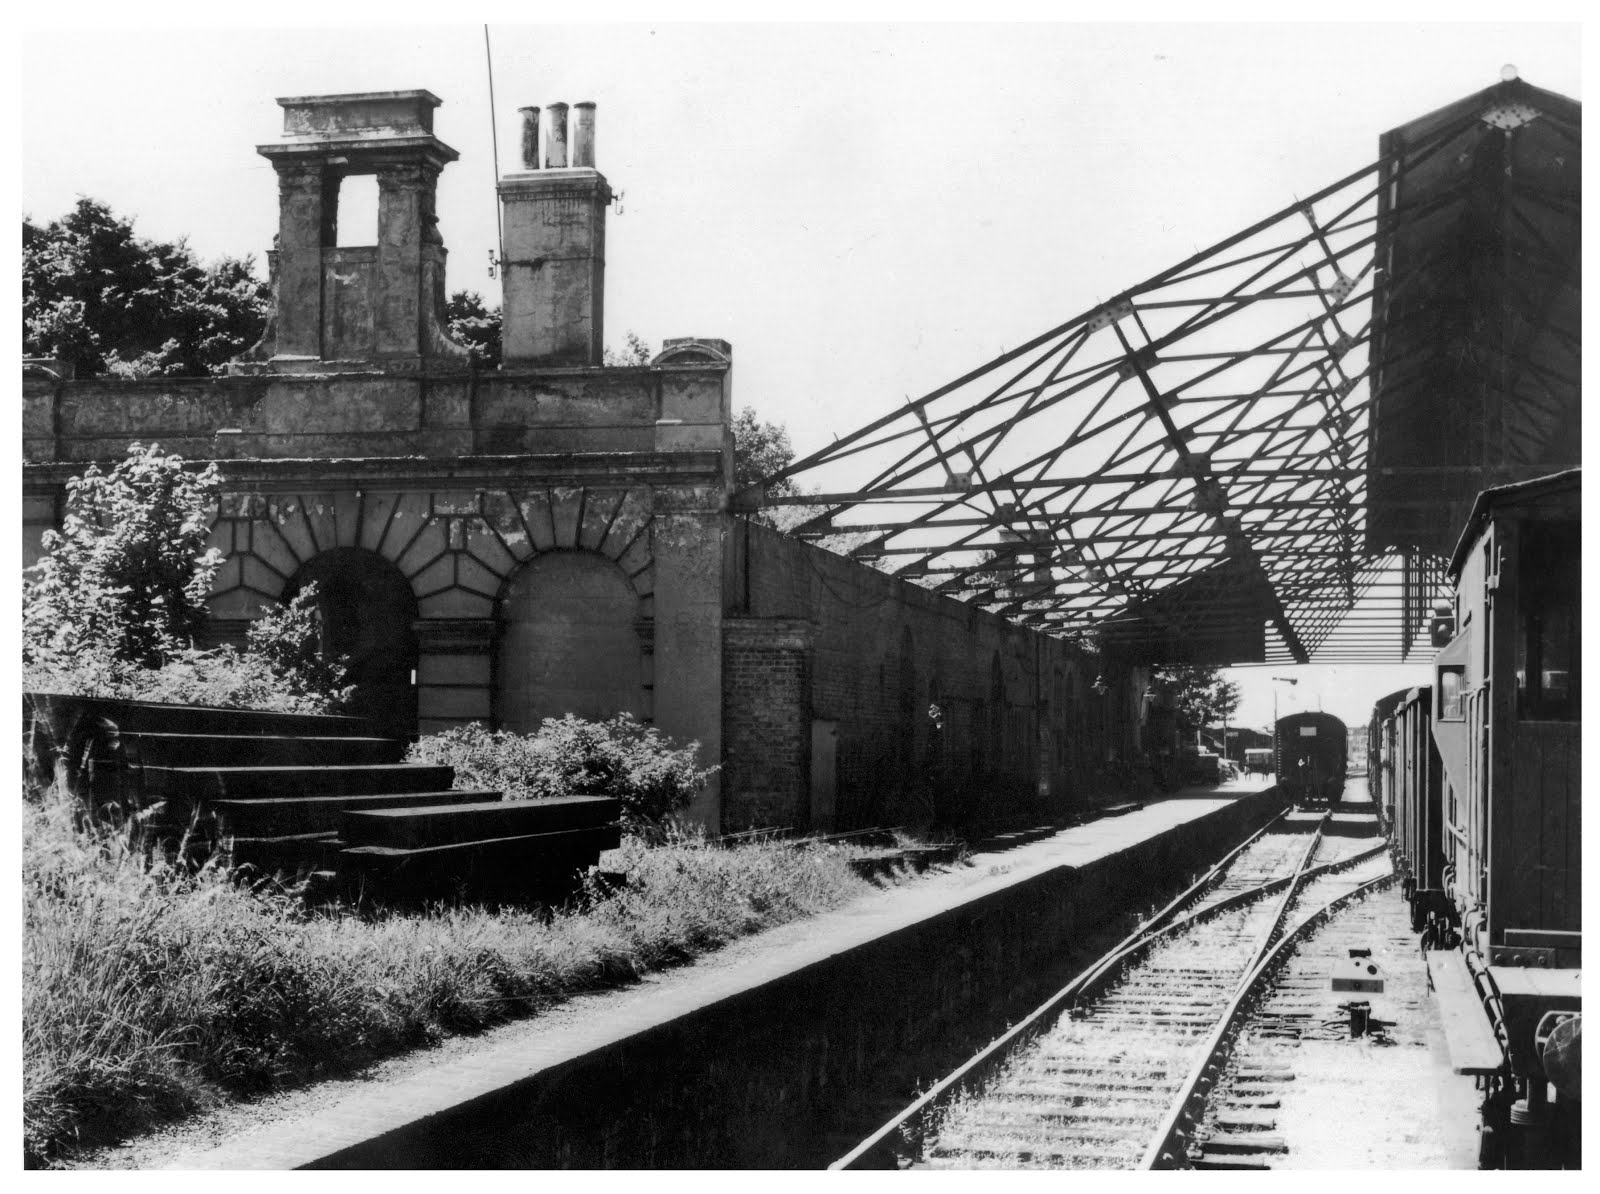 Gosport Station 1960s